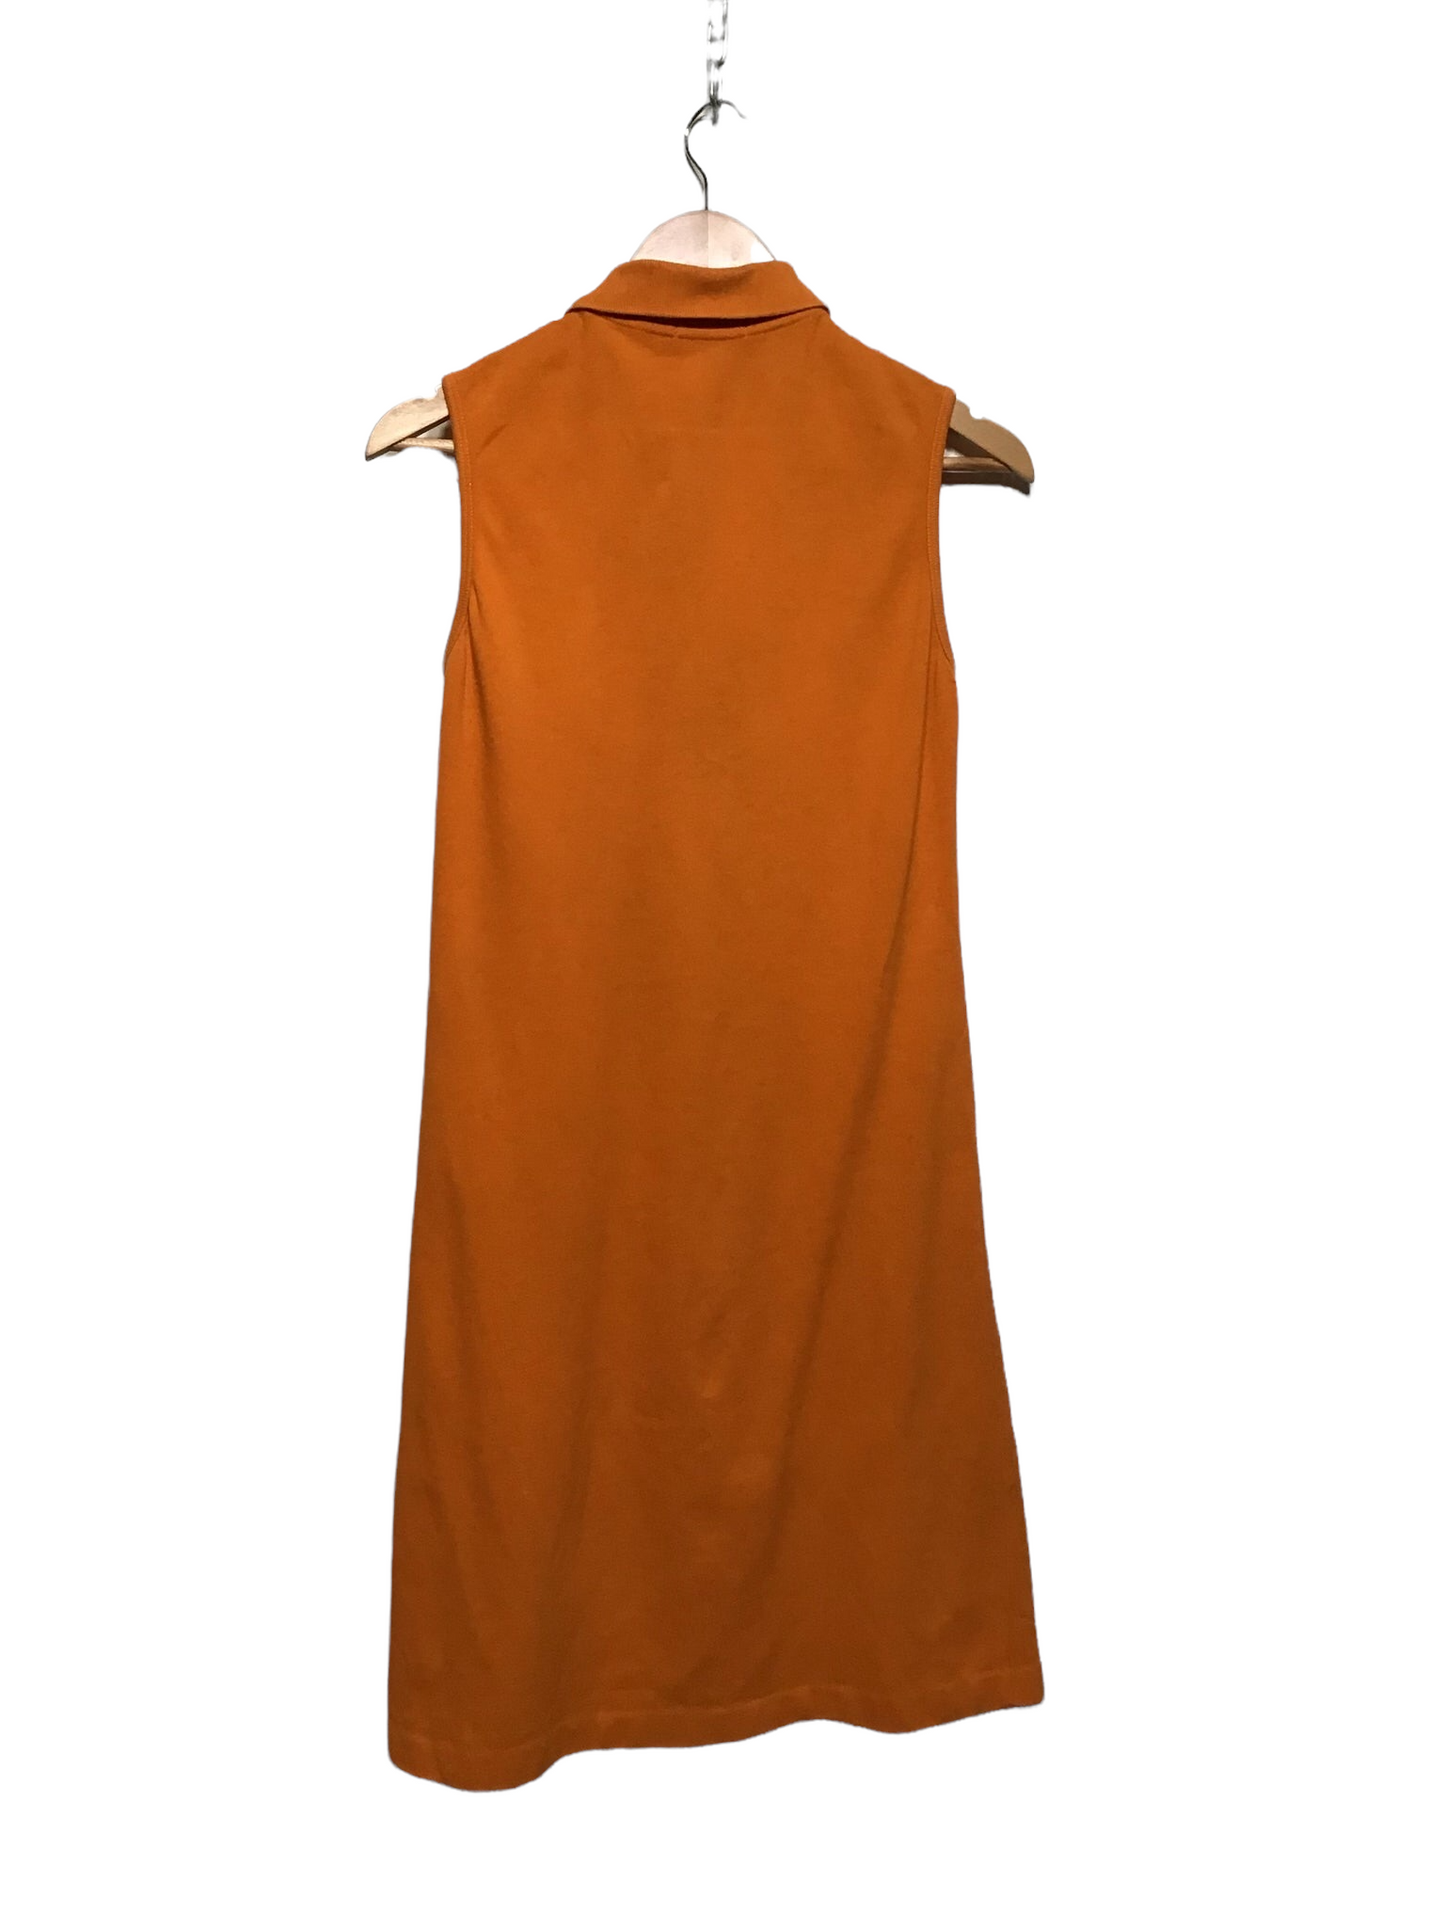 Burberry Orange Polo Dress (Size S)